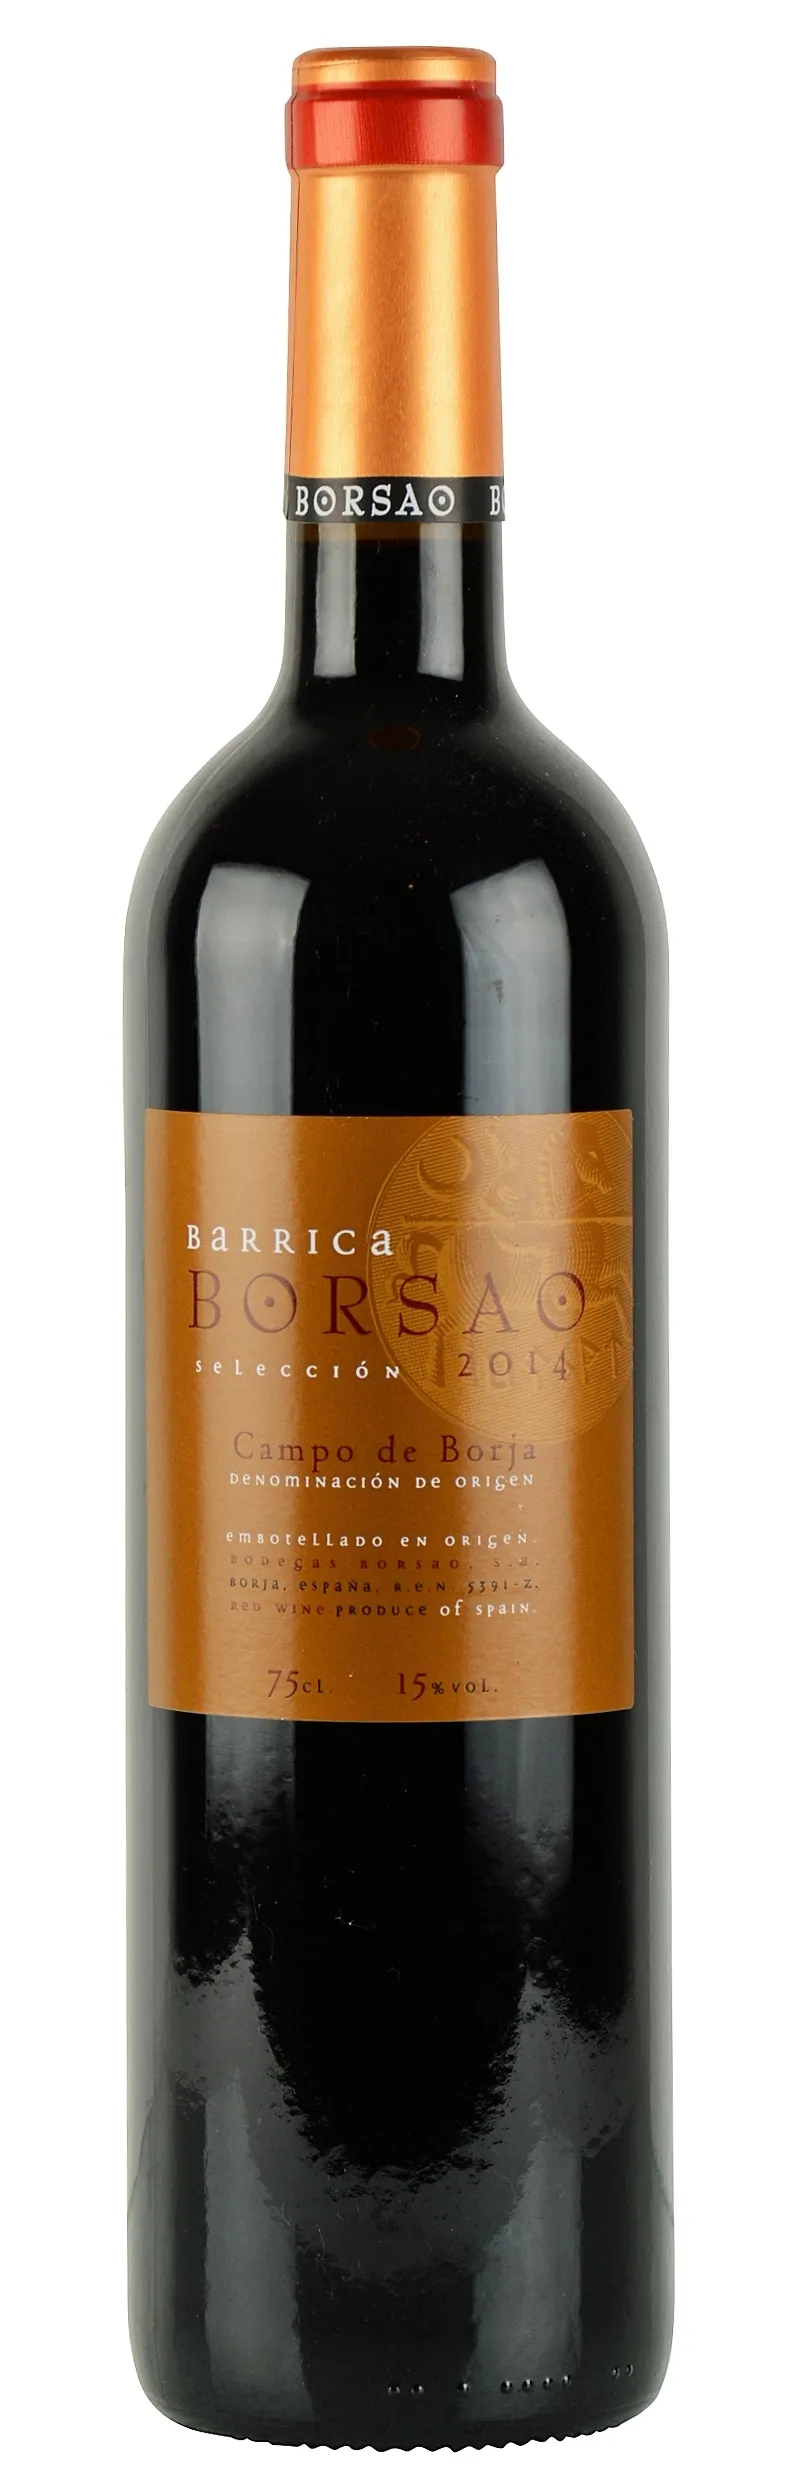 Bottle of Borsao Bodegas Barrica (Selección) from search results